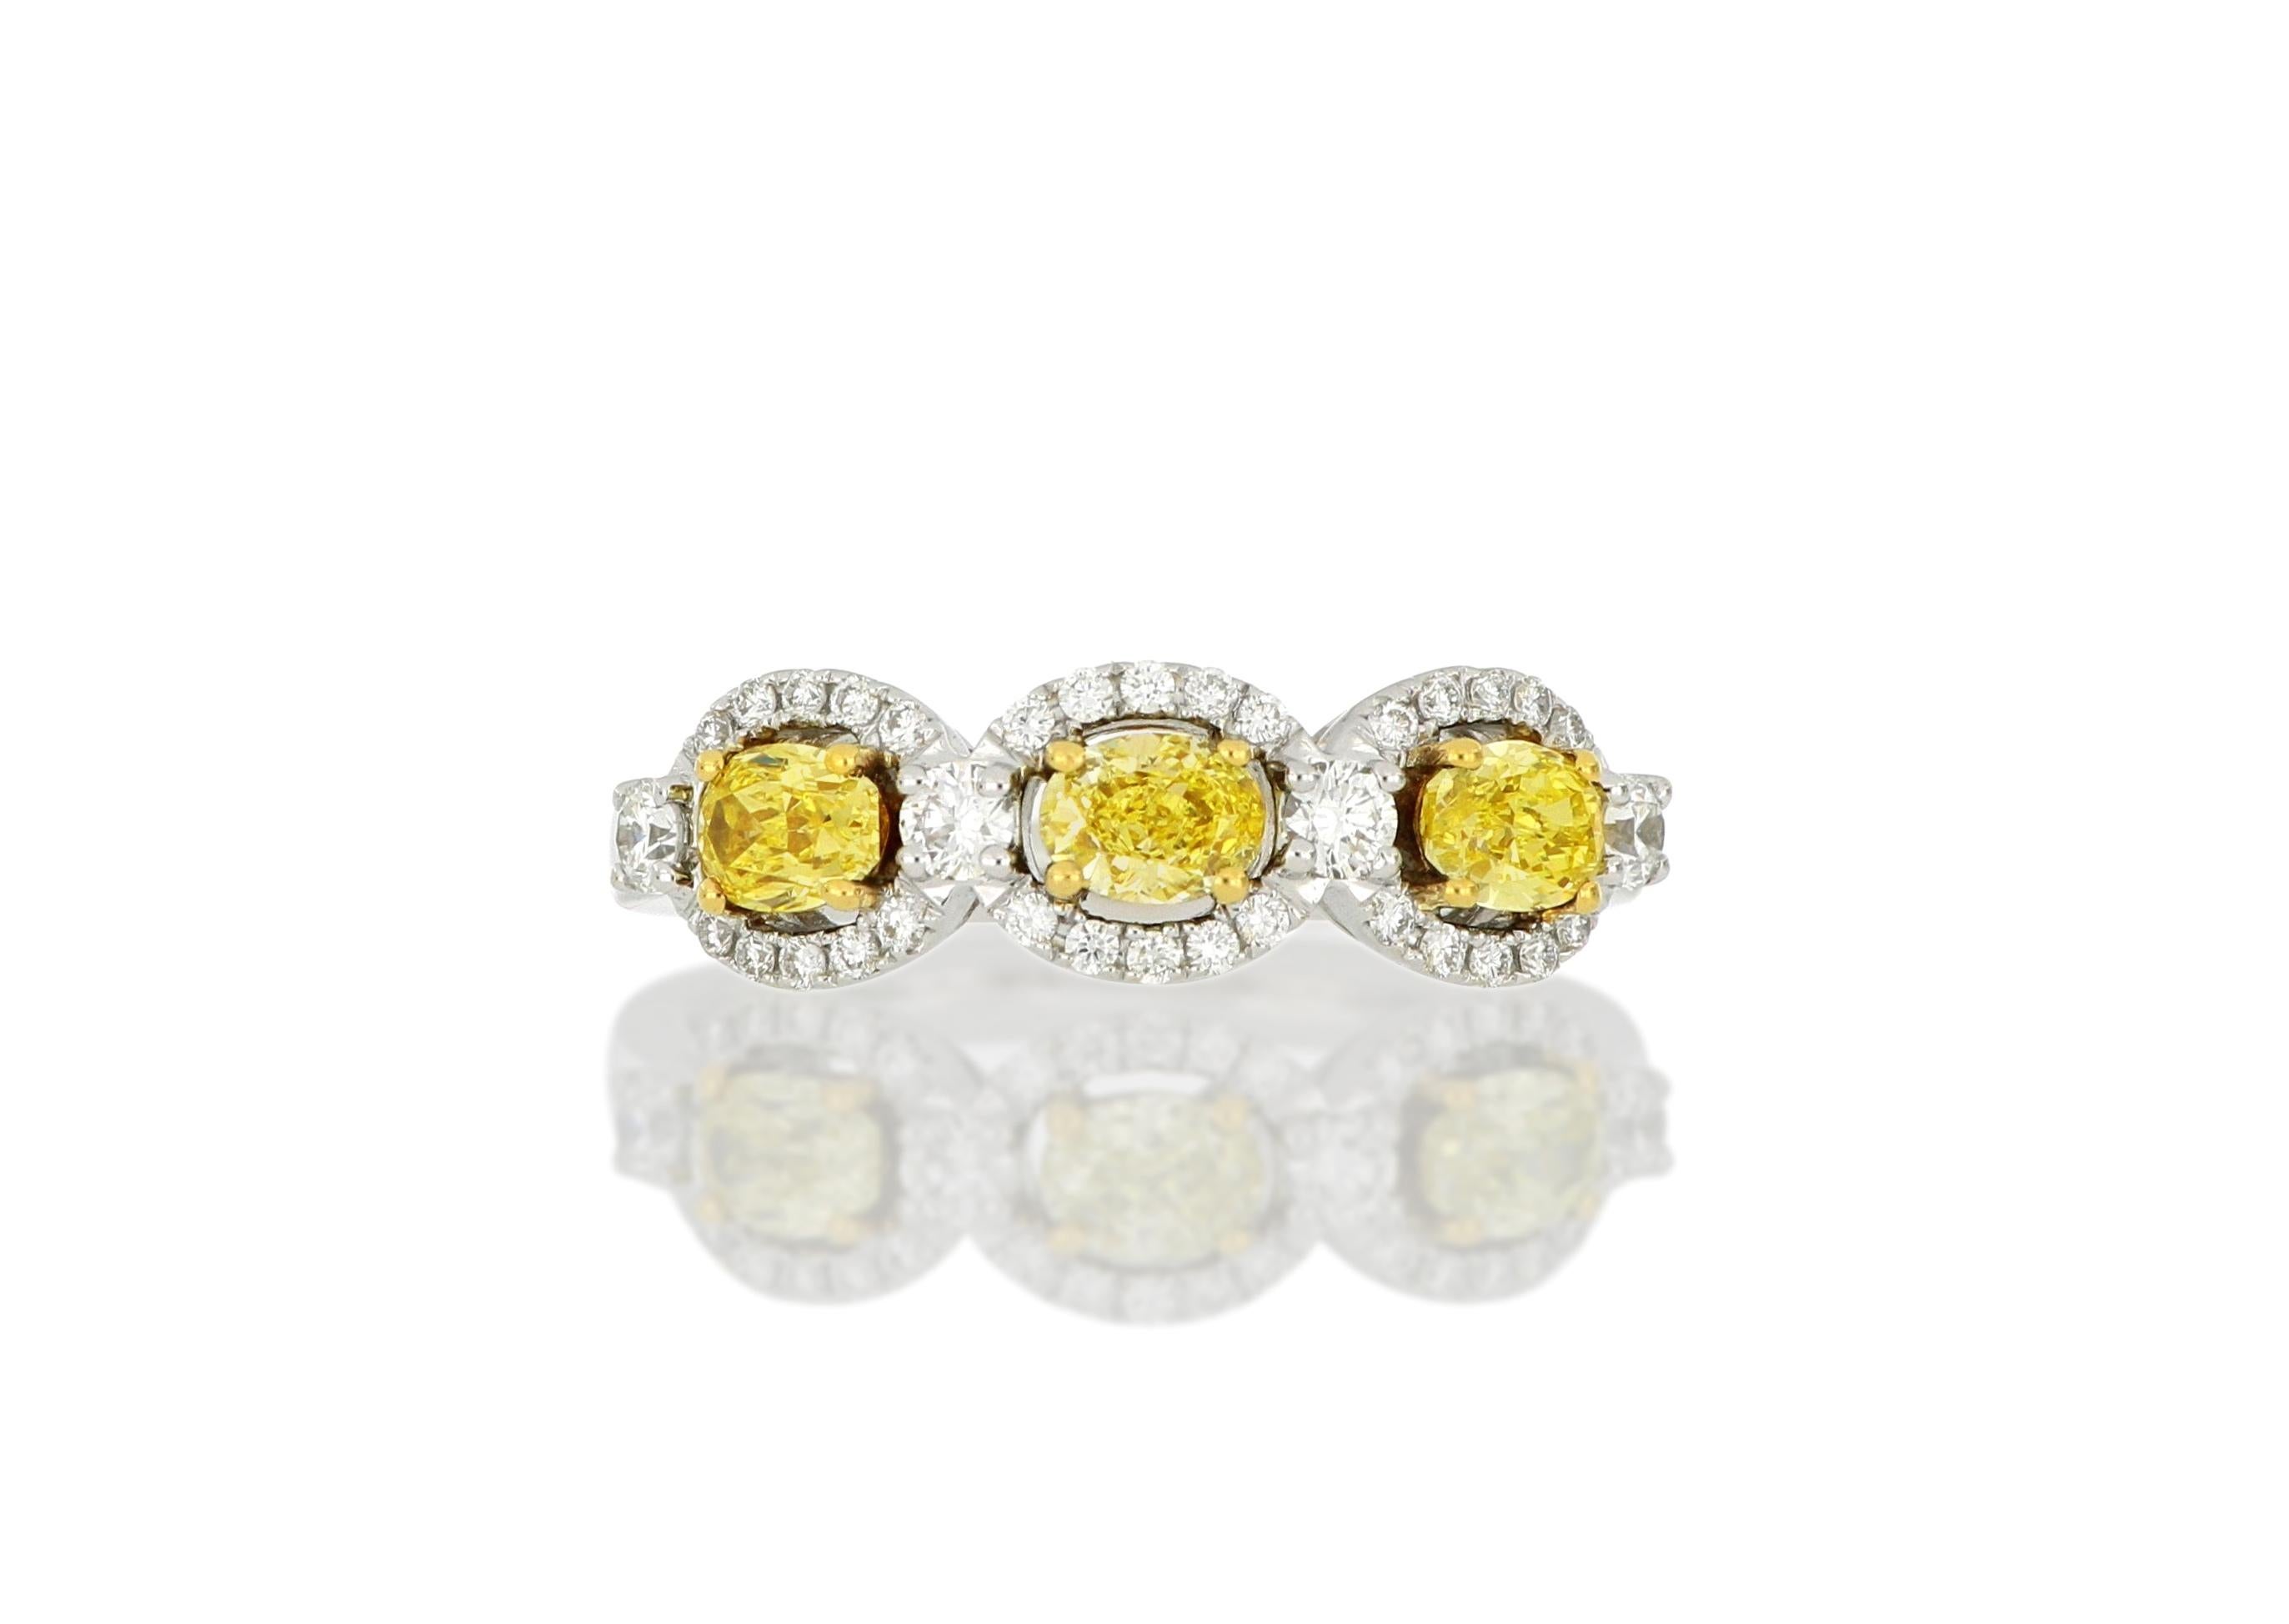 Ein gelber Dreistein-Diamantring, besetzt mit drei ovalen gelben Fancy-Diamanten mit einem Gewicht von ca. 0,69 Karat, die jeweils von einem weißen Diamanten im Brillantschliff umgeben sind,  mit einem Gesamtgewicht von etwa 0,32 Karat, gefasst in